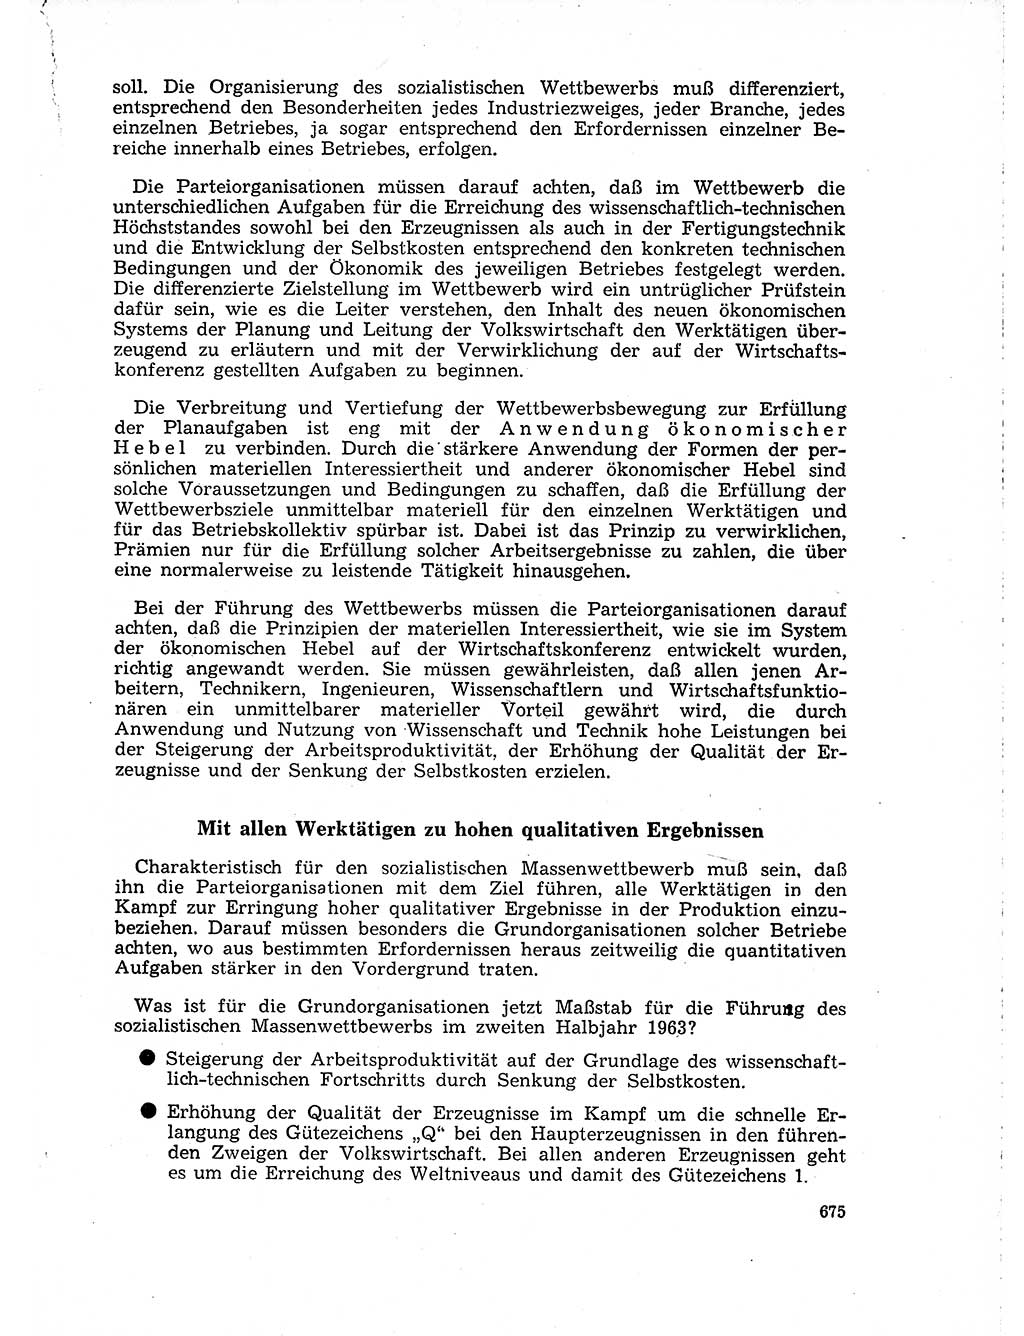 Neuer Weg (NW), Organ des Zentralkomitees (ZK) der SED (Sozialistische Einheitspartei Deutschlands) für Fragen des Parteilebens, 18. Jahrgang [Deutsche Demokratische Republik (DDR)] 1963, Seite 675 (NW ZK SED DDR 1963, S. 675)